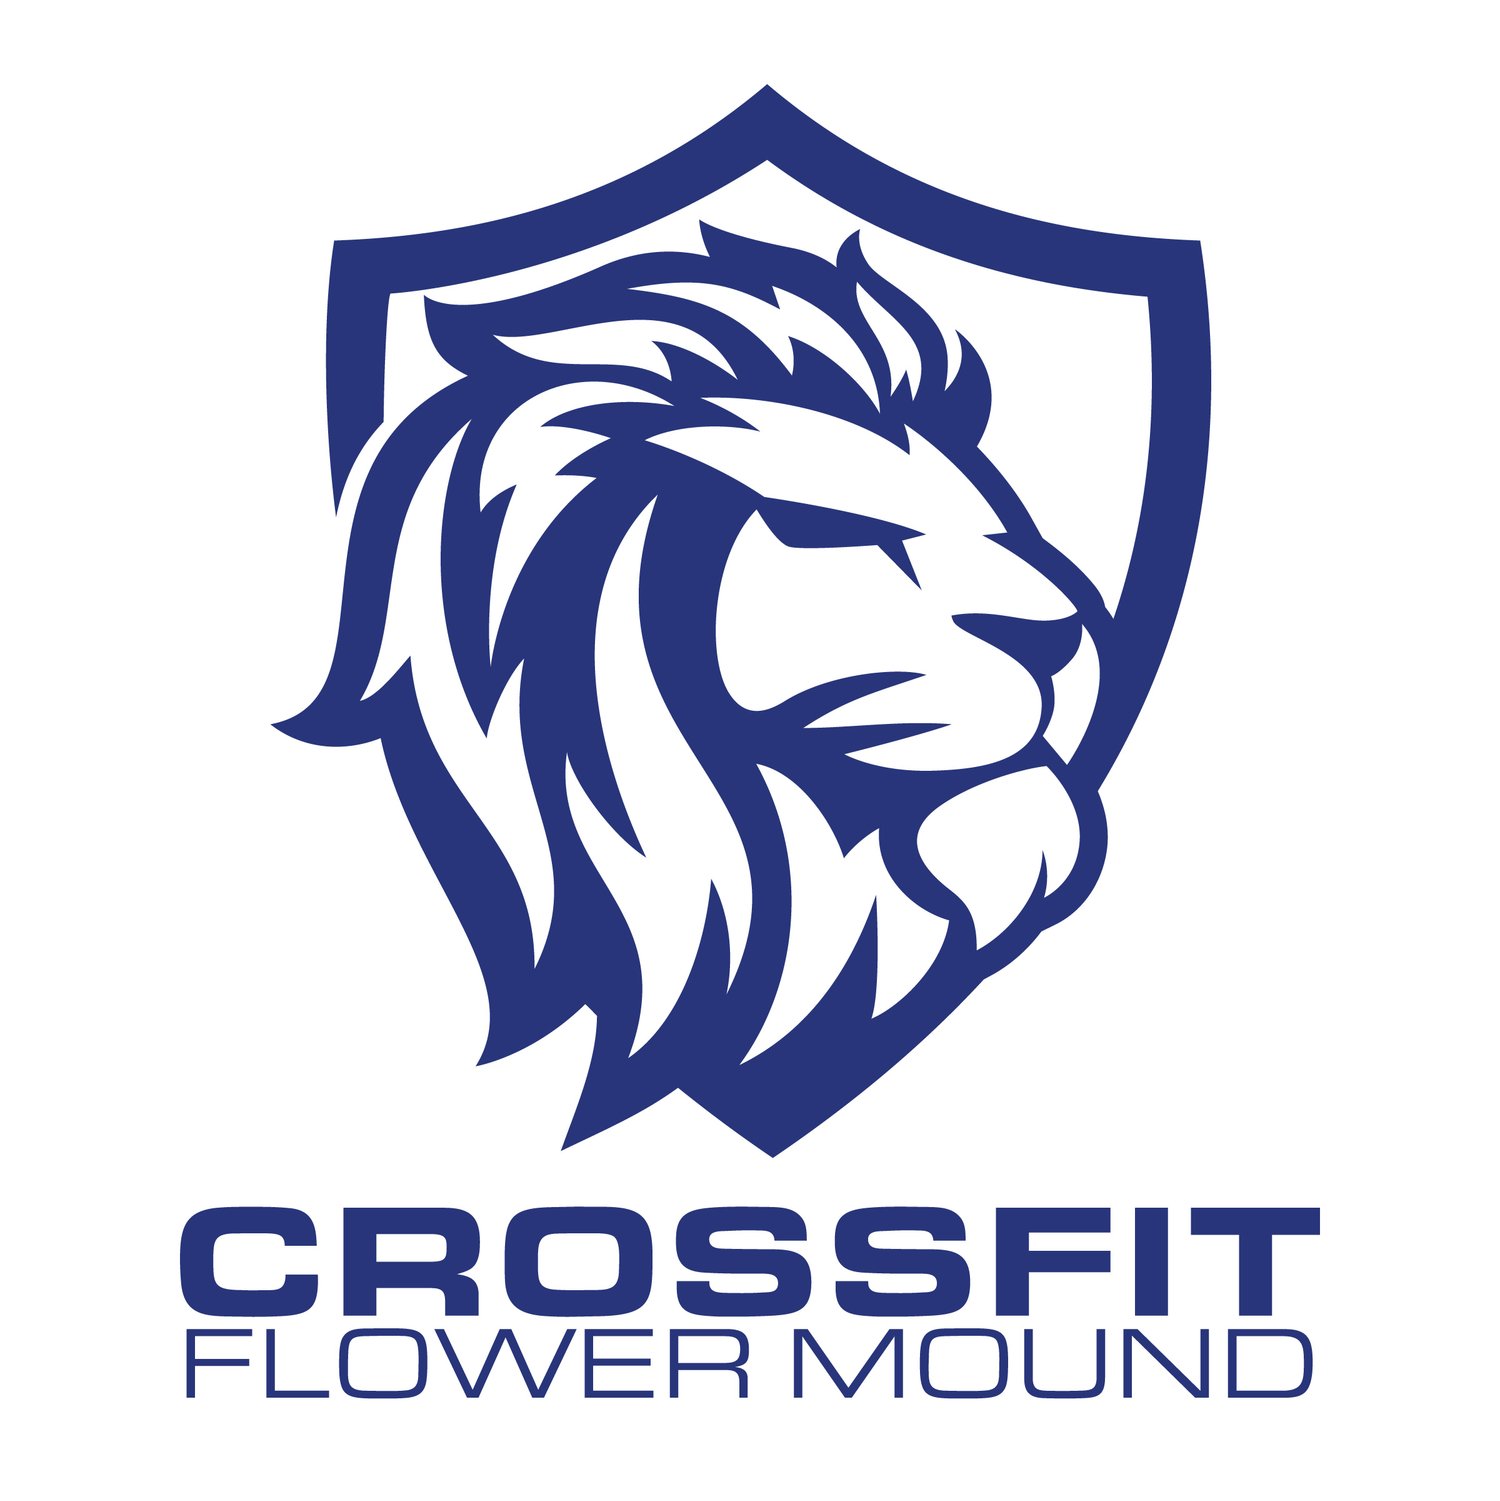 CrossFit Flower Mound